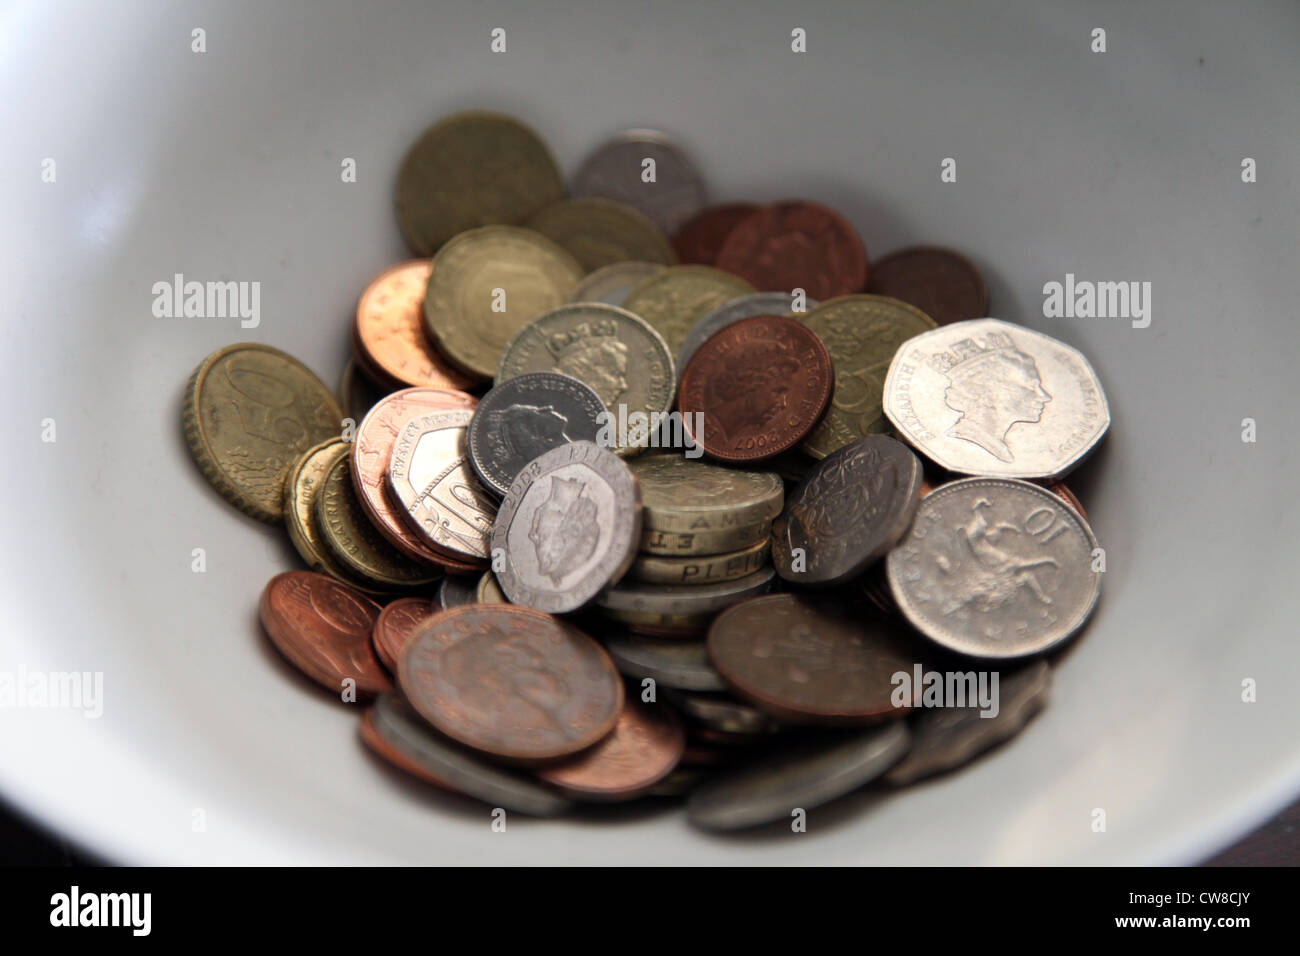 Es una foto de un recipiente blanco lleno de monedas. Podemos ver la libra inglesa dinero que están allí. Puede ser consejos o dinero de bolsillo Foto de stock